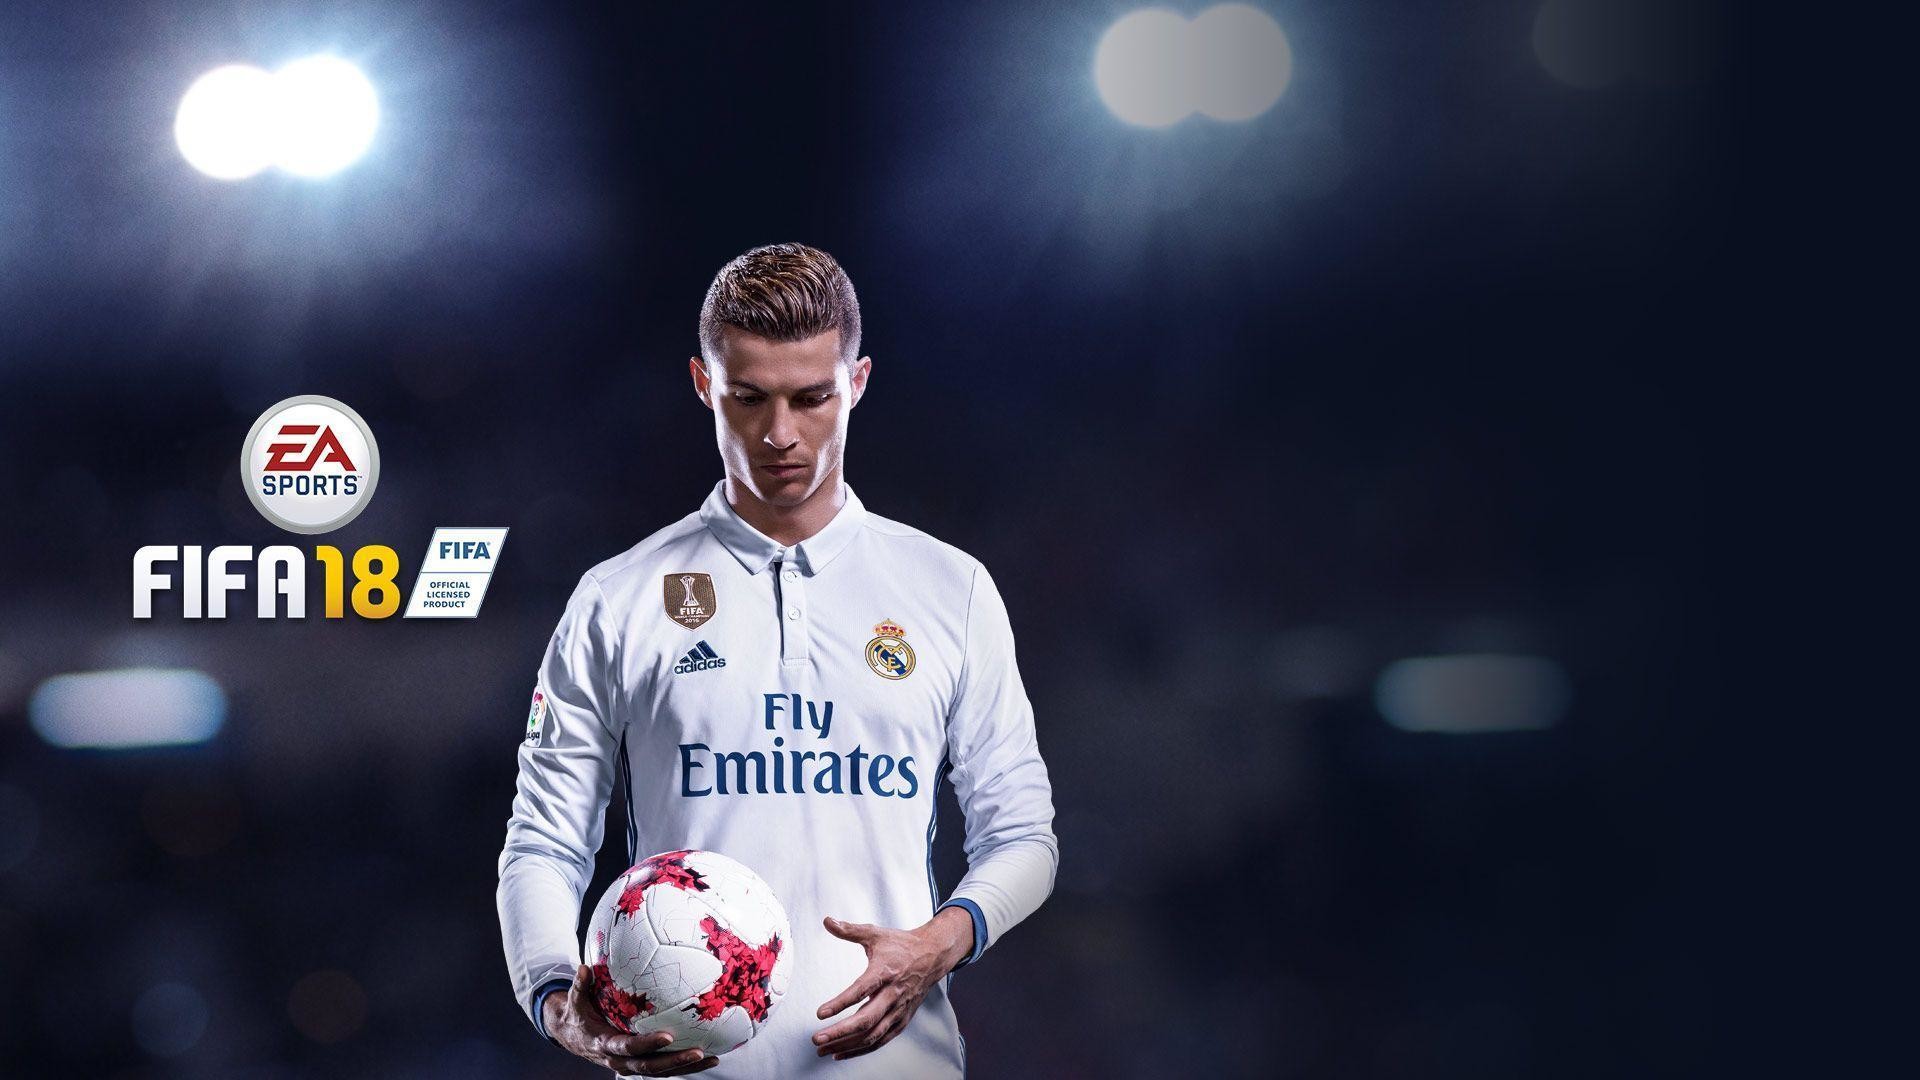 Fifa 18 Cover Star Cristiano Ronaldo - Fifa 18 Wallpaper 4k - HD Wallpaper 